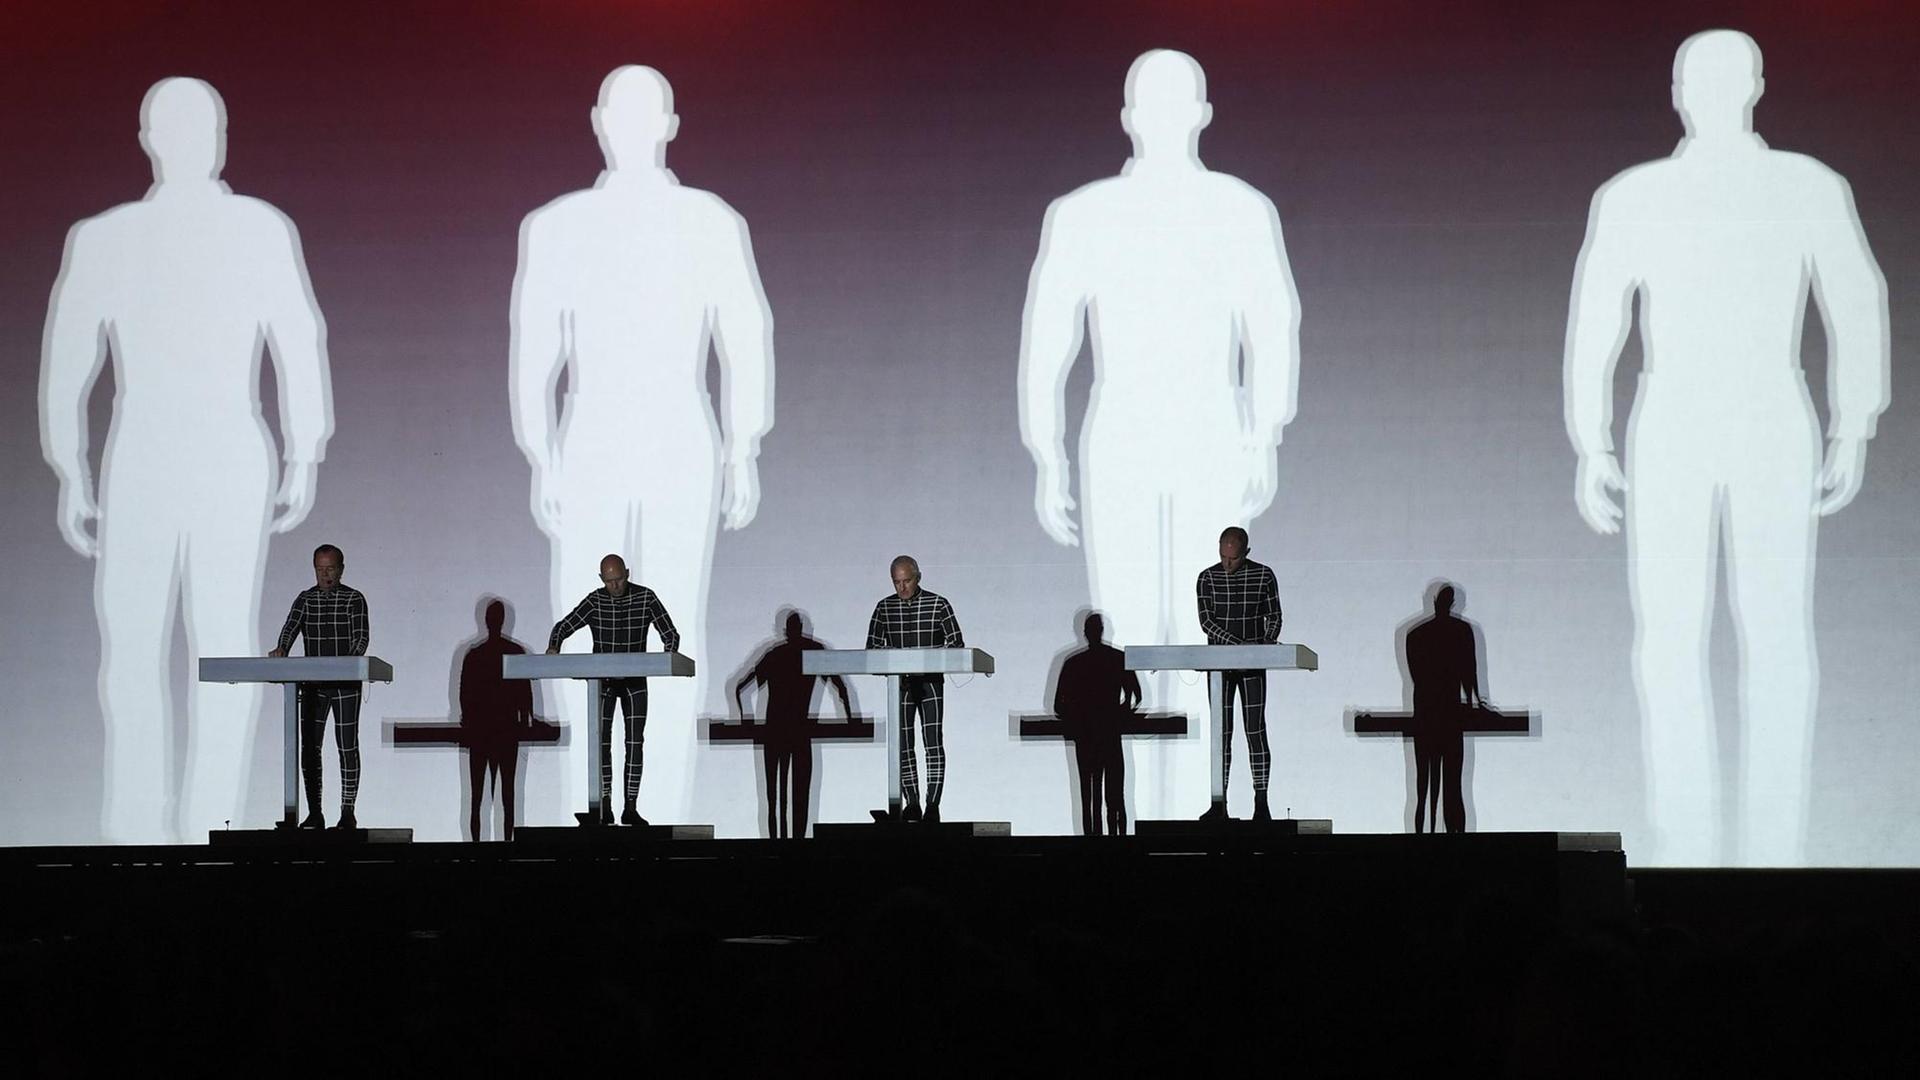 Auf der Bühne stehen die 4 Mitglieder der Band Kraftwerk an Keyboards. Im Hintergrund werden ihre Schatten auf die Leinwand projiziert.